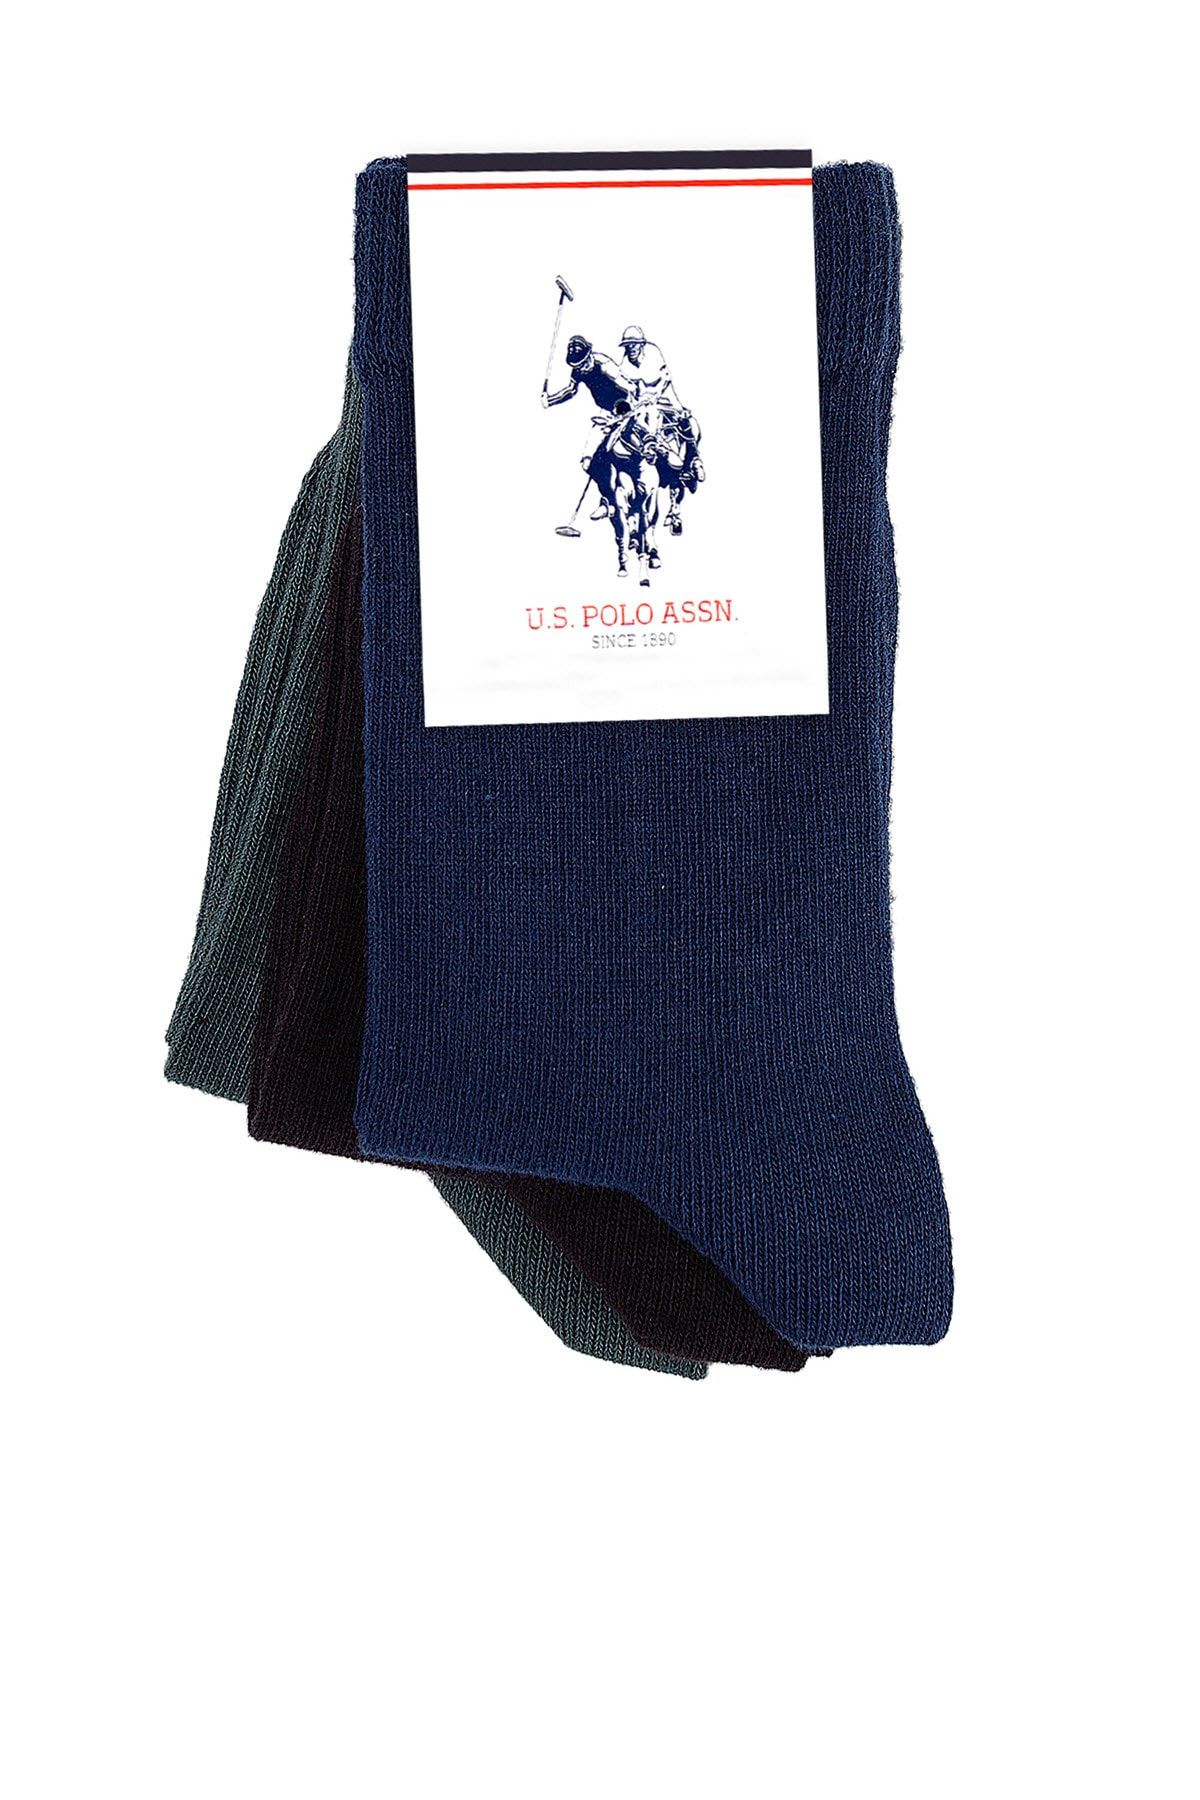 U.S. Polo Assn. Lacivert Erkek Çocuk Çorap